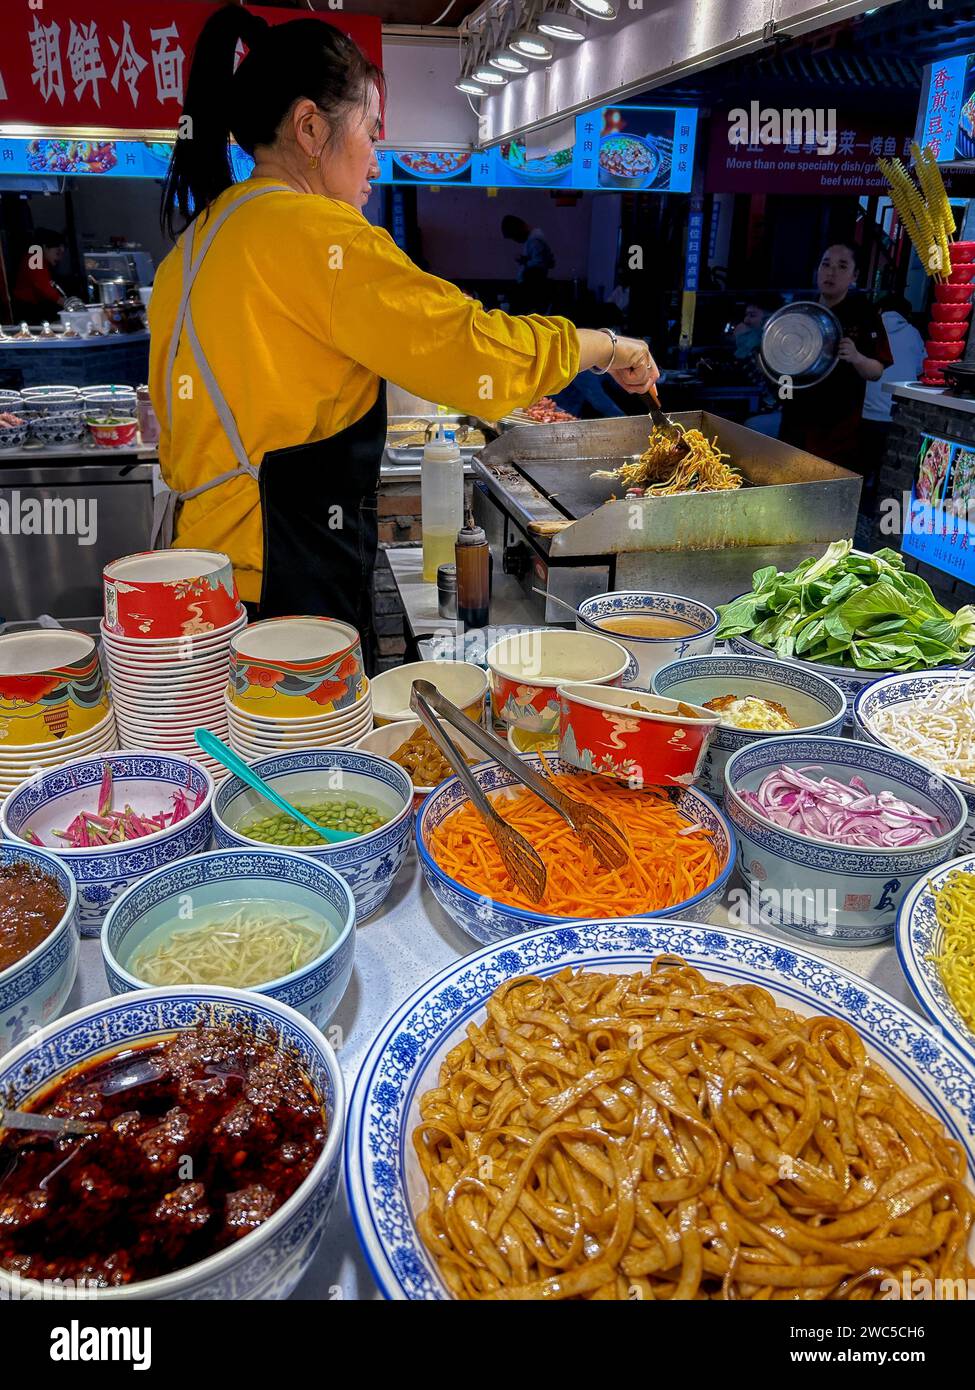 Pechino, Cina, chef cinese che lavora nel ristorante cinese, nel quartiere storico, nel centro storico, nel centro storico, 'Fangzhuanchang Hutong', Foto Stock